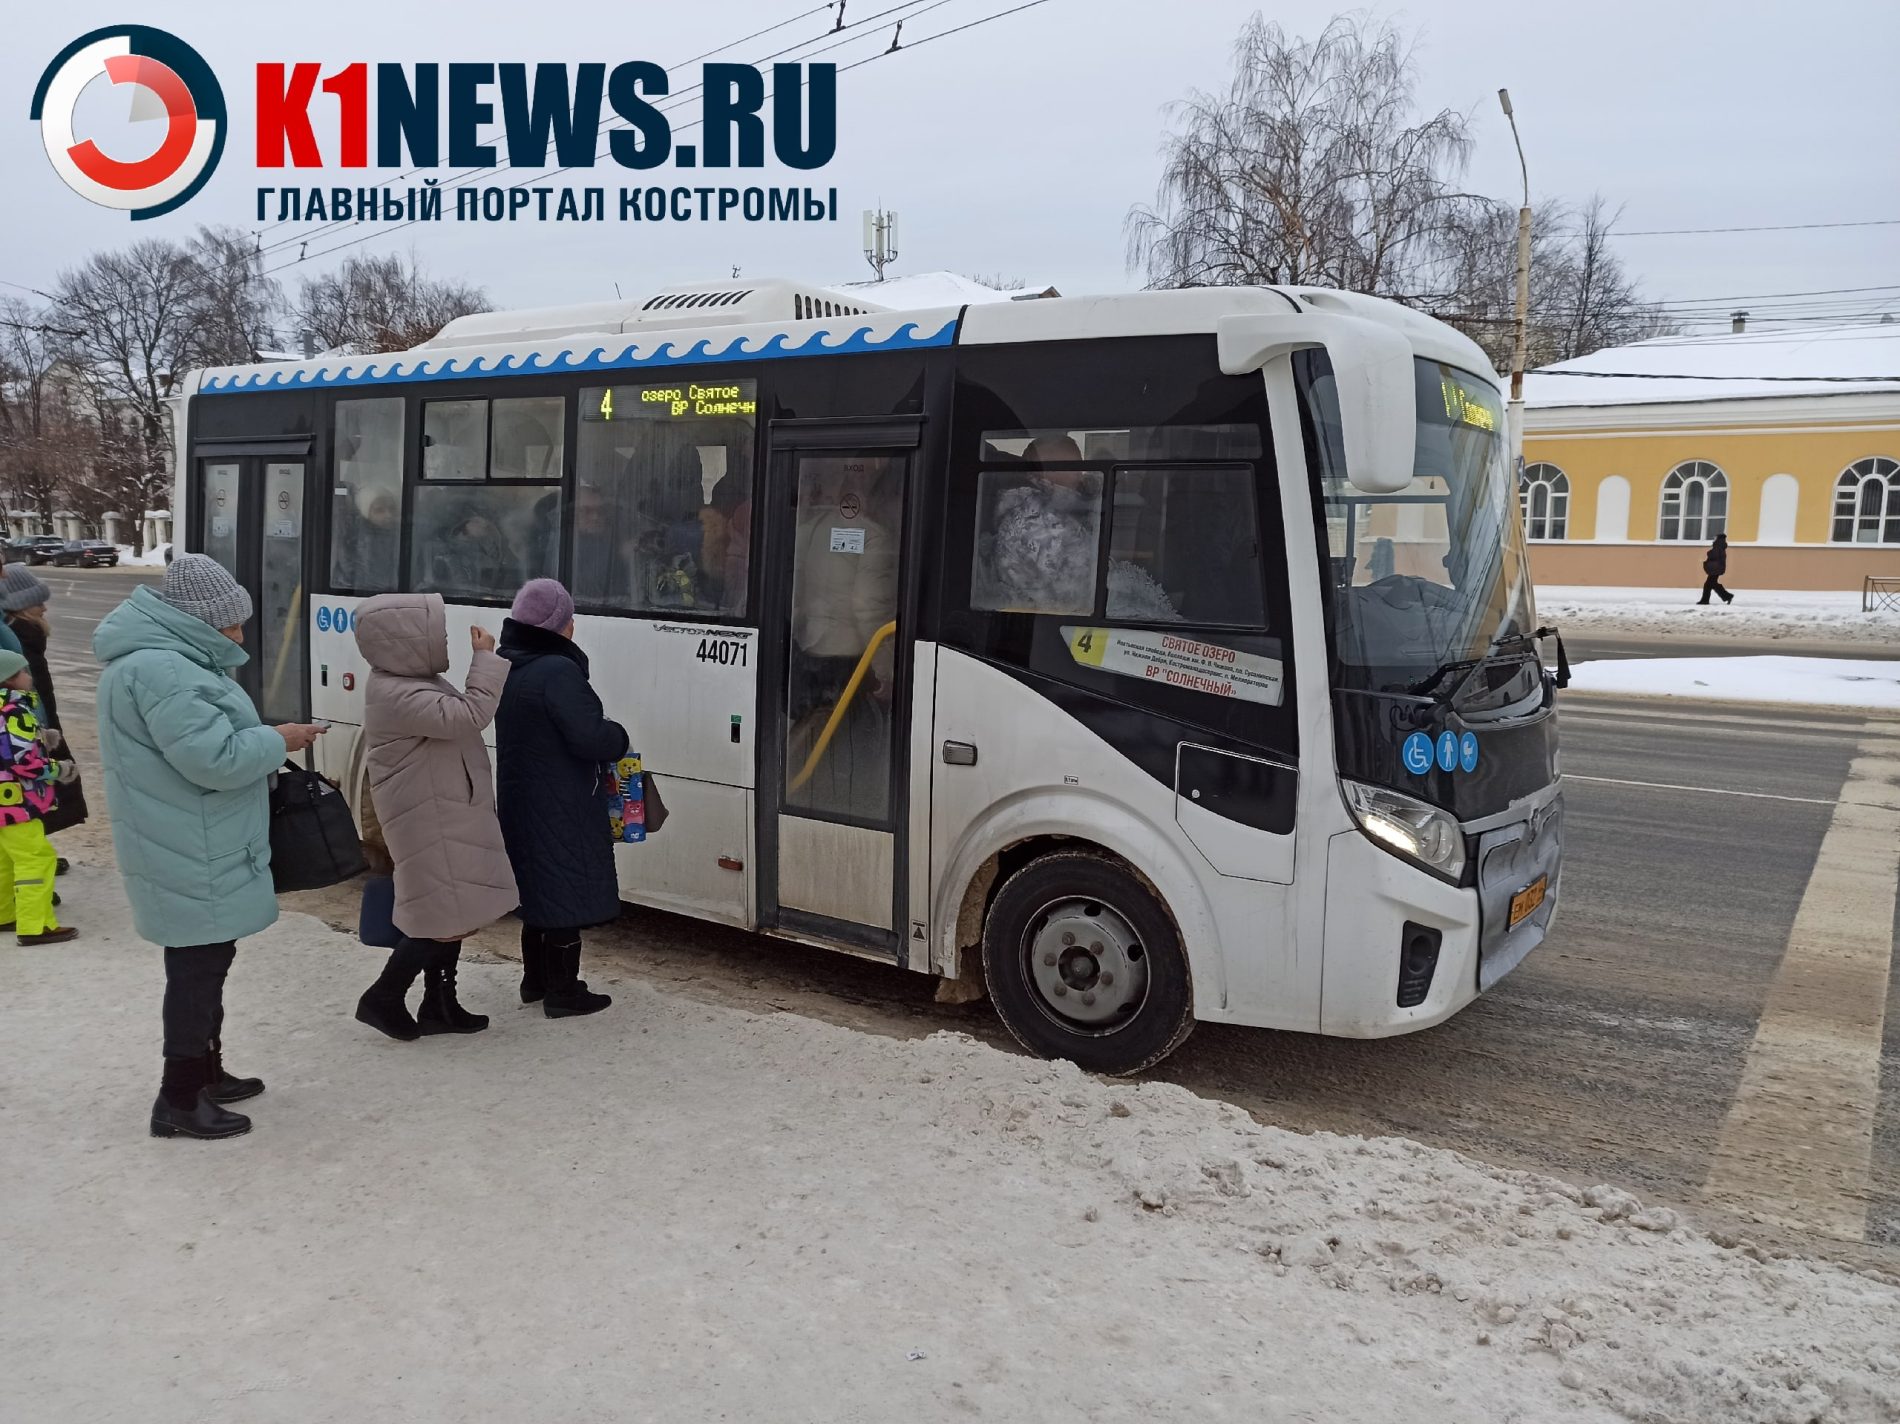 Определили место Костромы в рейтинге качества общественного транспорта